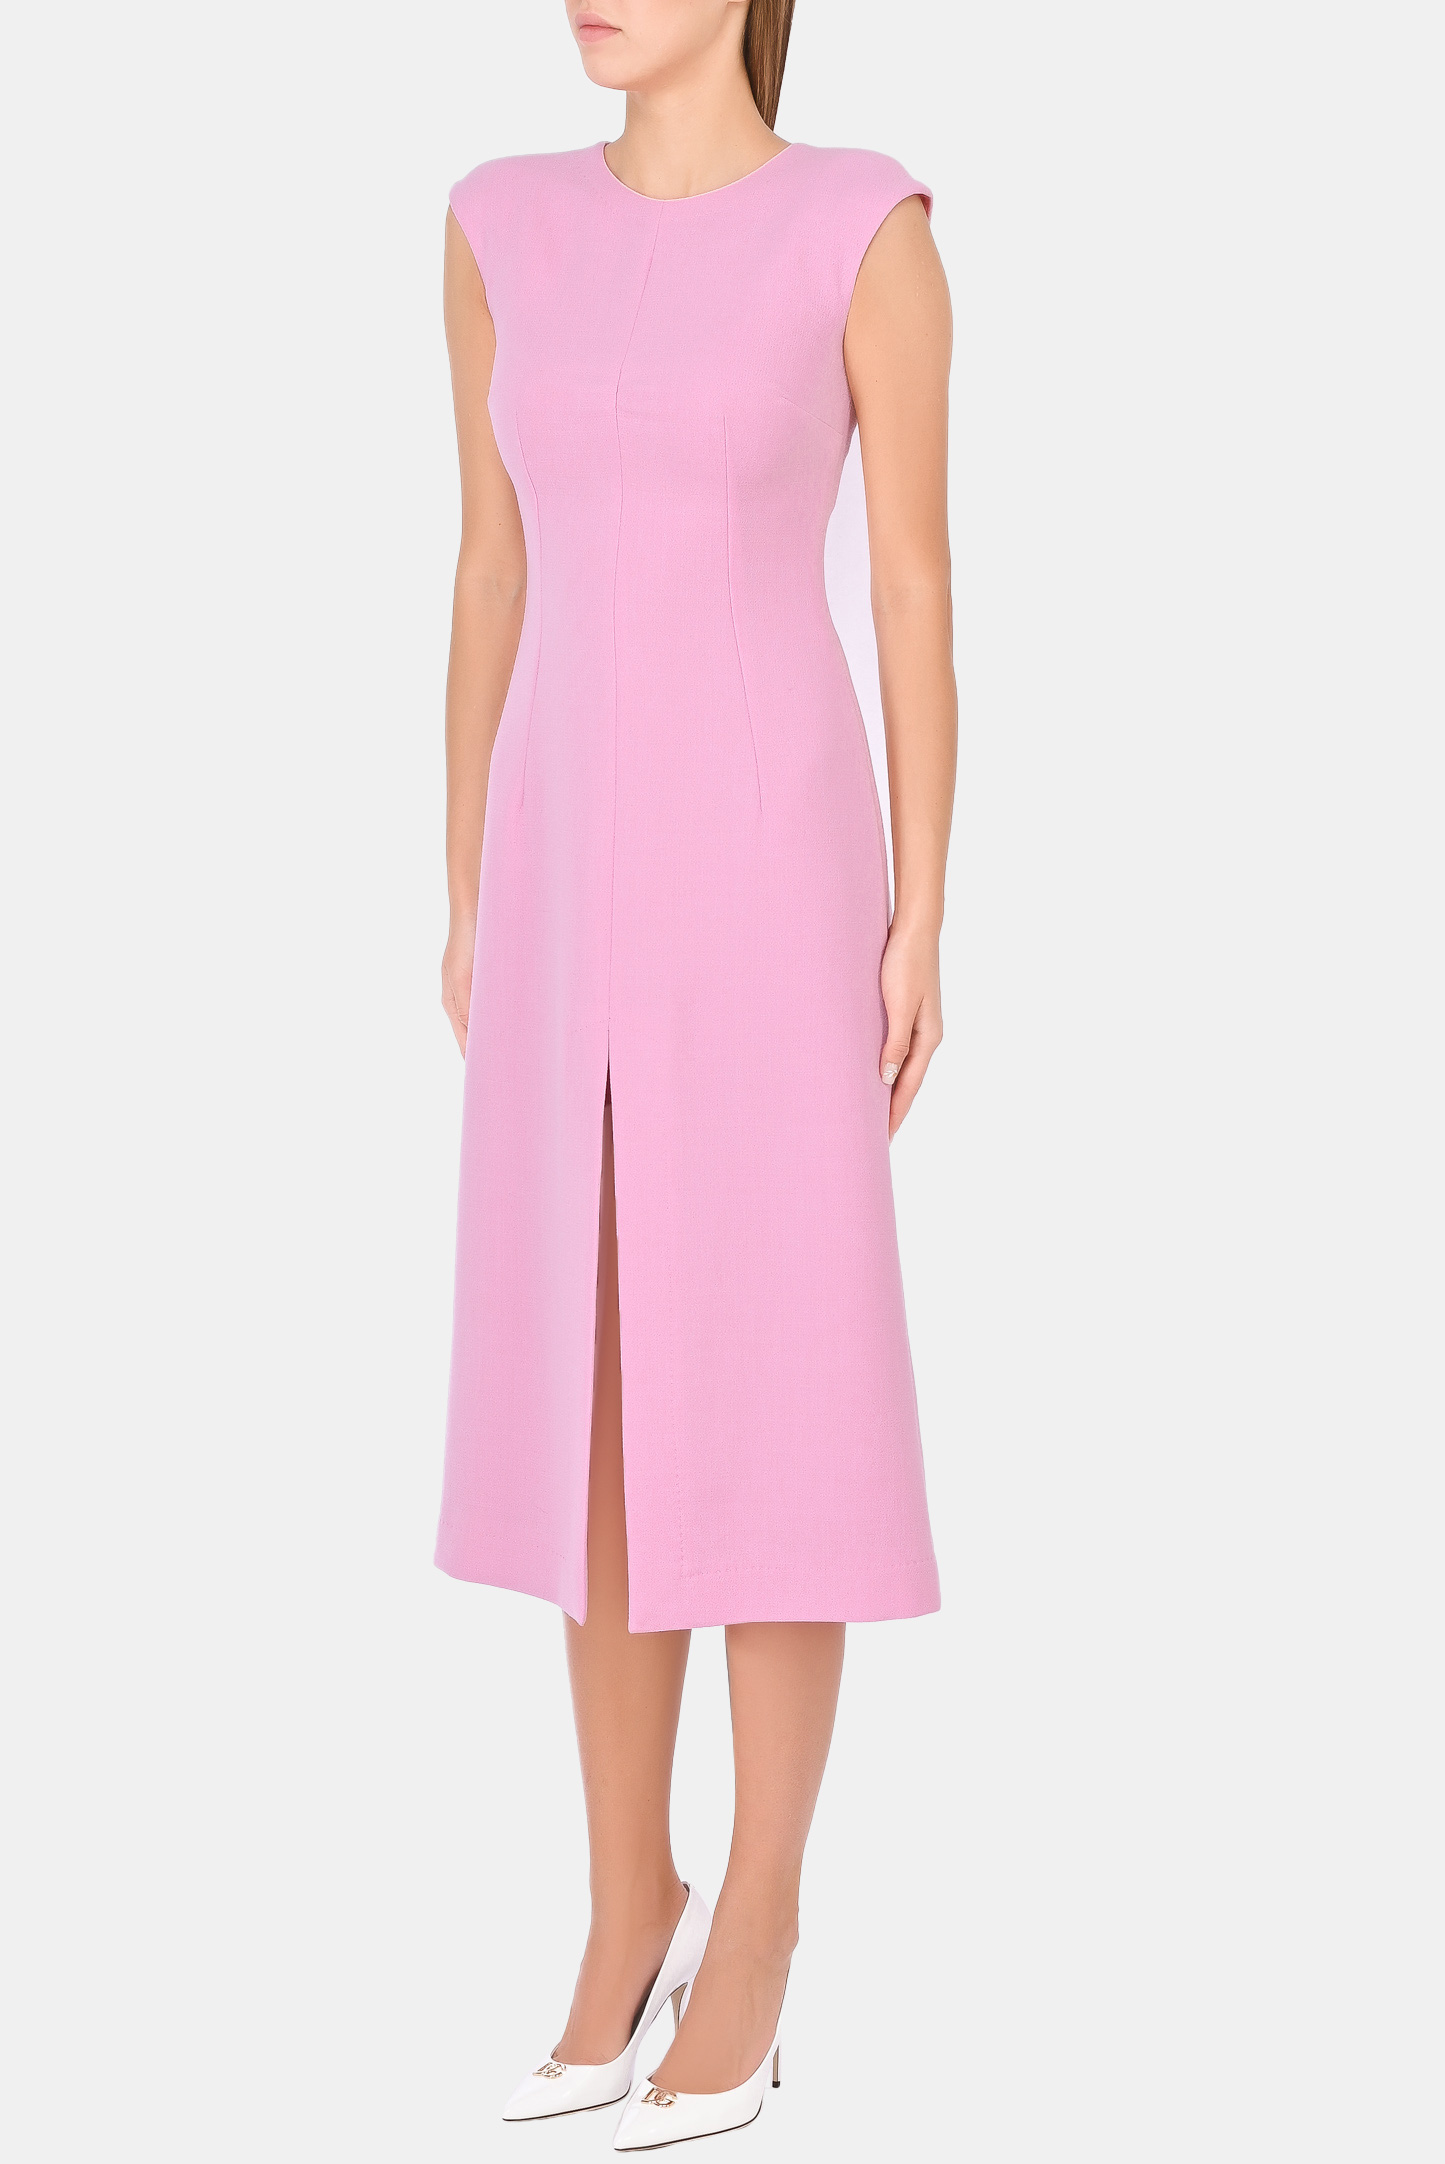 Платье DOLCE & GABBANA F6Q1ZT FU2TZ, цвет: Розовый, Женский